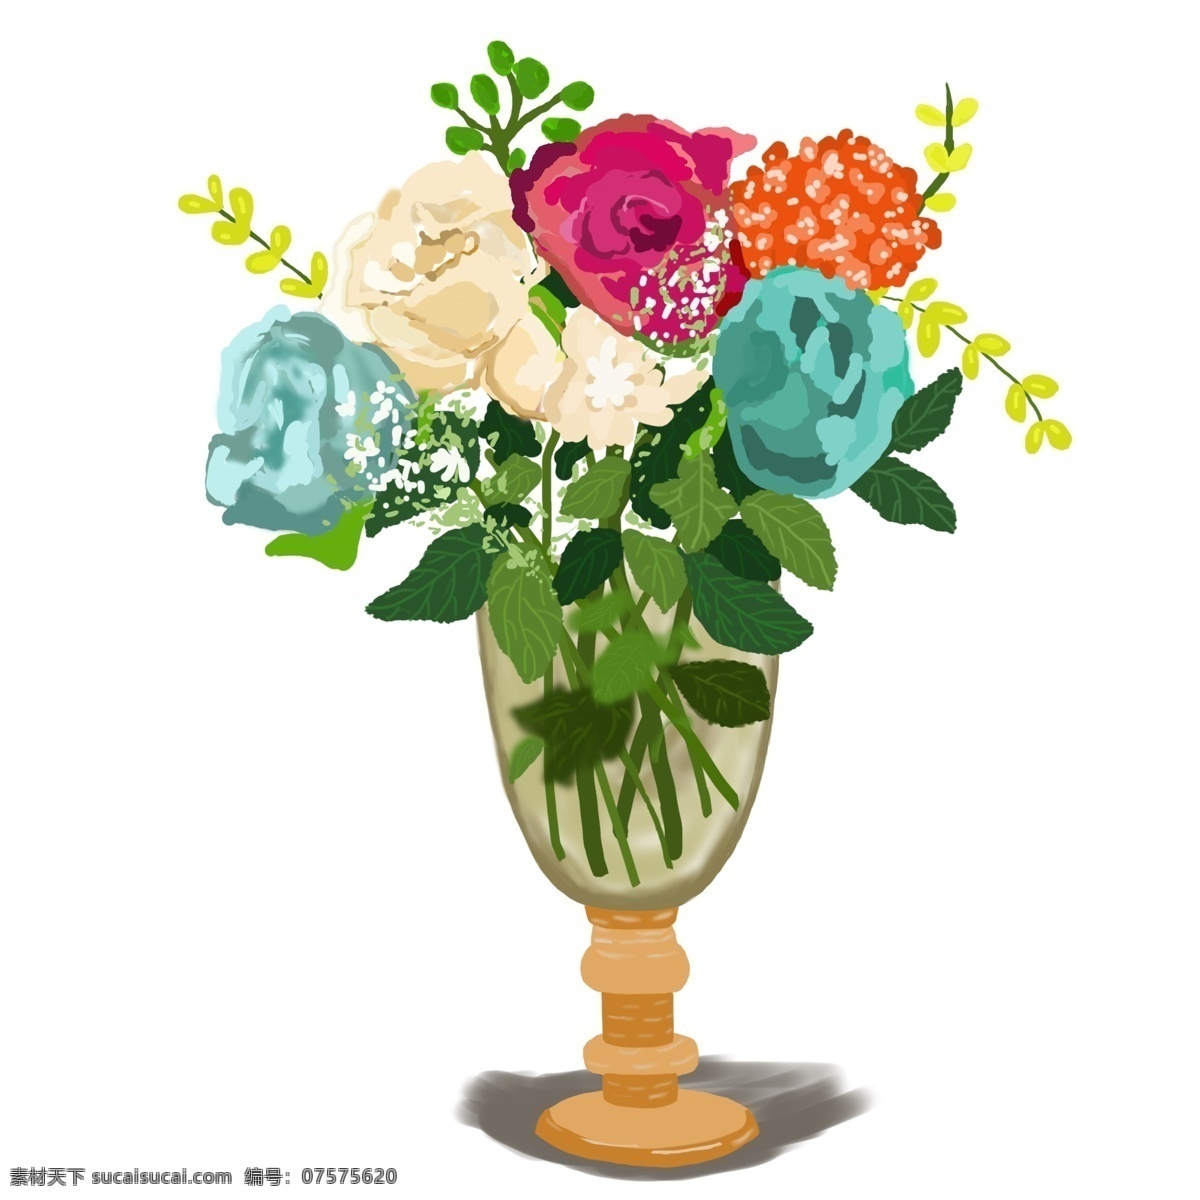 手绘 欧式 玫瑰 花朵 元素 绣球 装饰枝条 蓝色 红色 花瓶